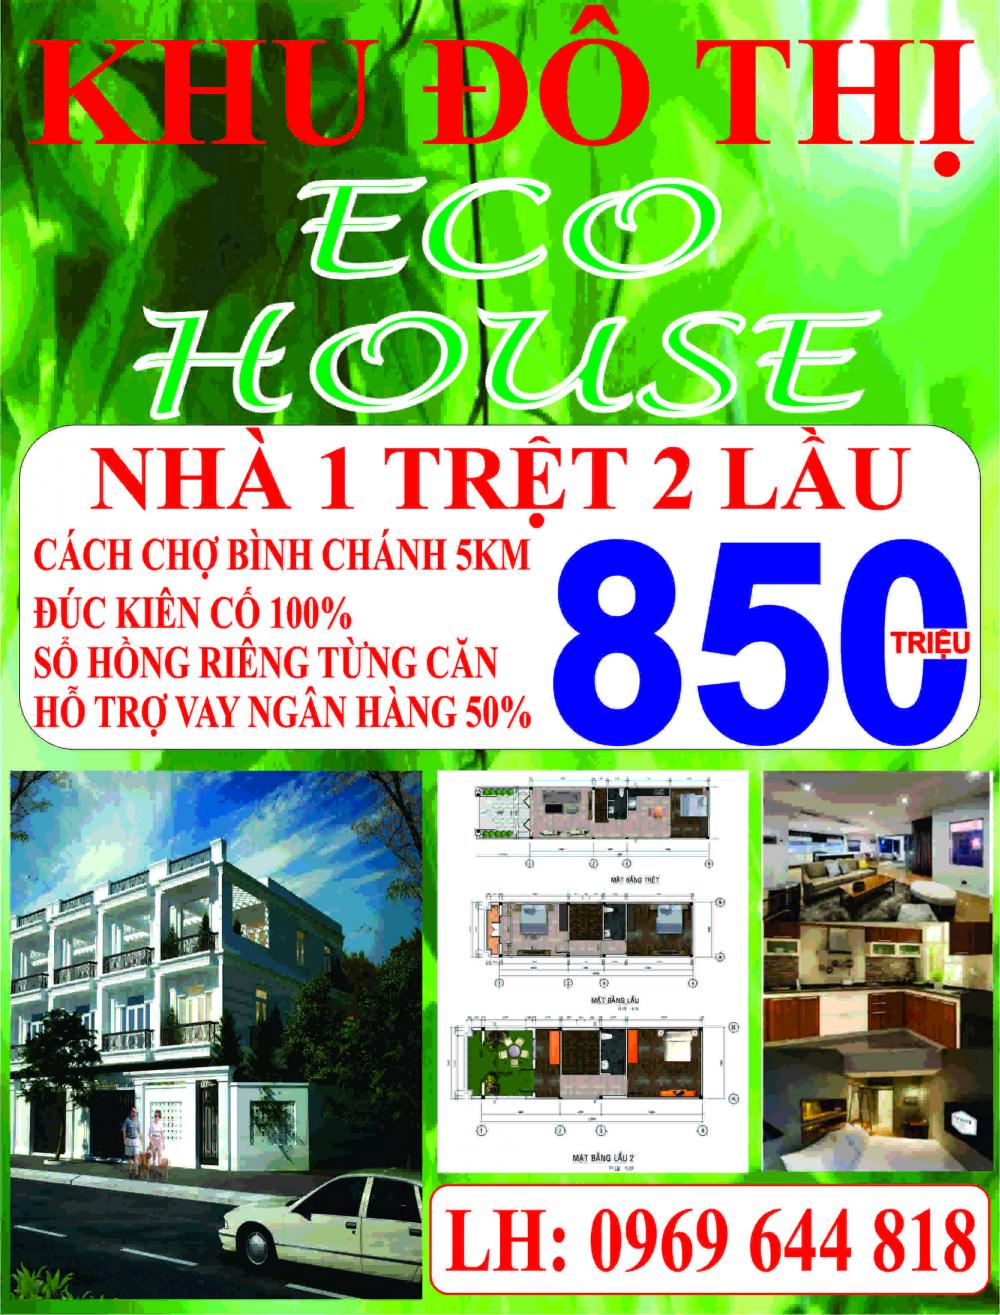 Bán nhà phố Eco House 1 trệt 2 lầu MT đường Đinh Đức Thiện